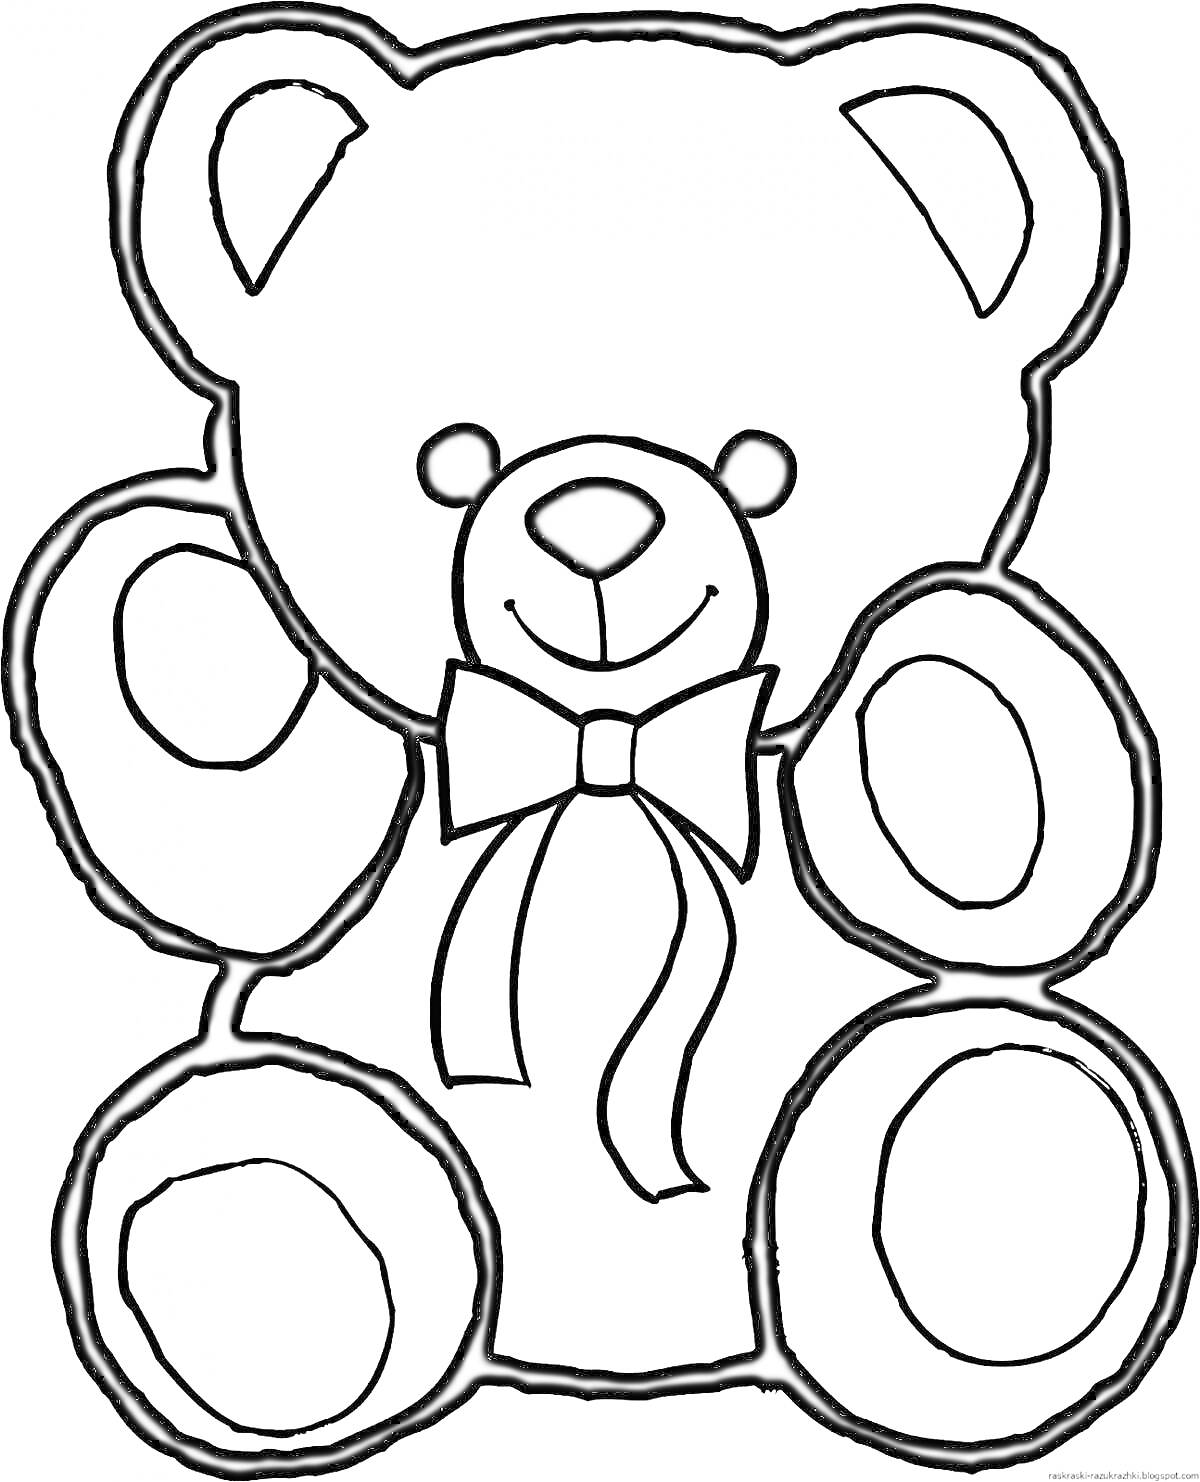 Раскраска Медвежонок с бантом, показывающий обе лапы